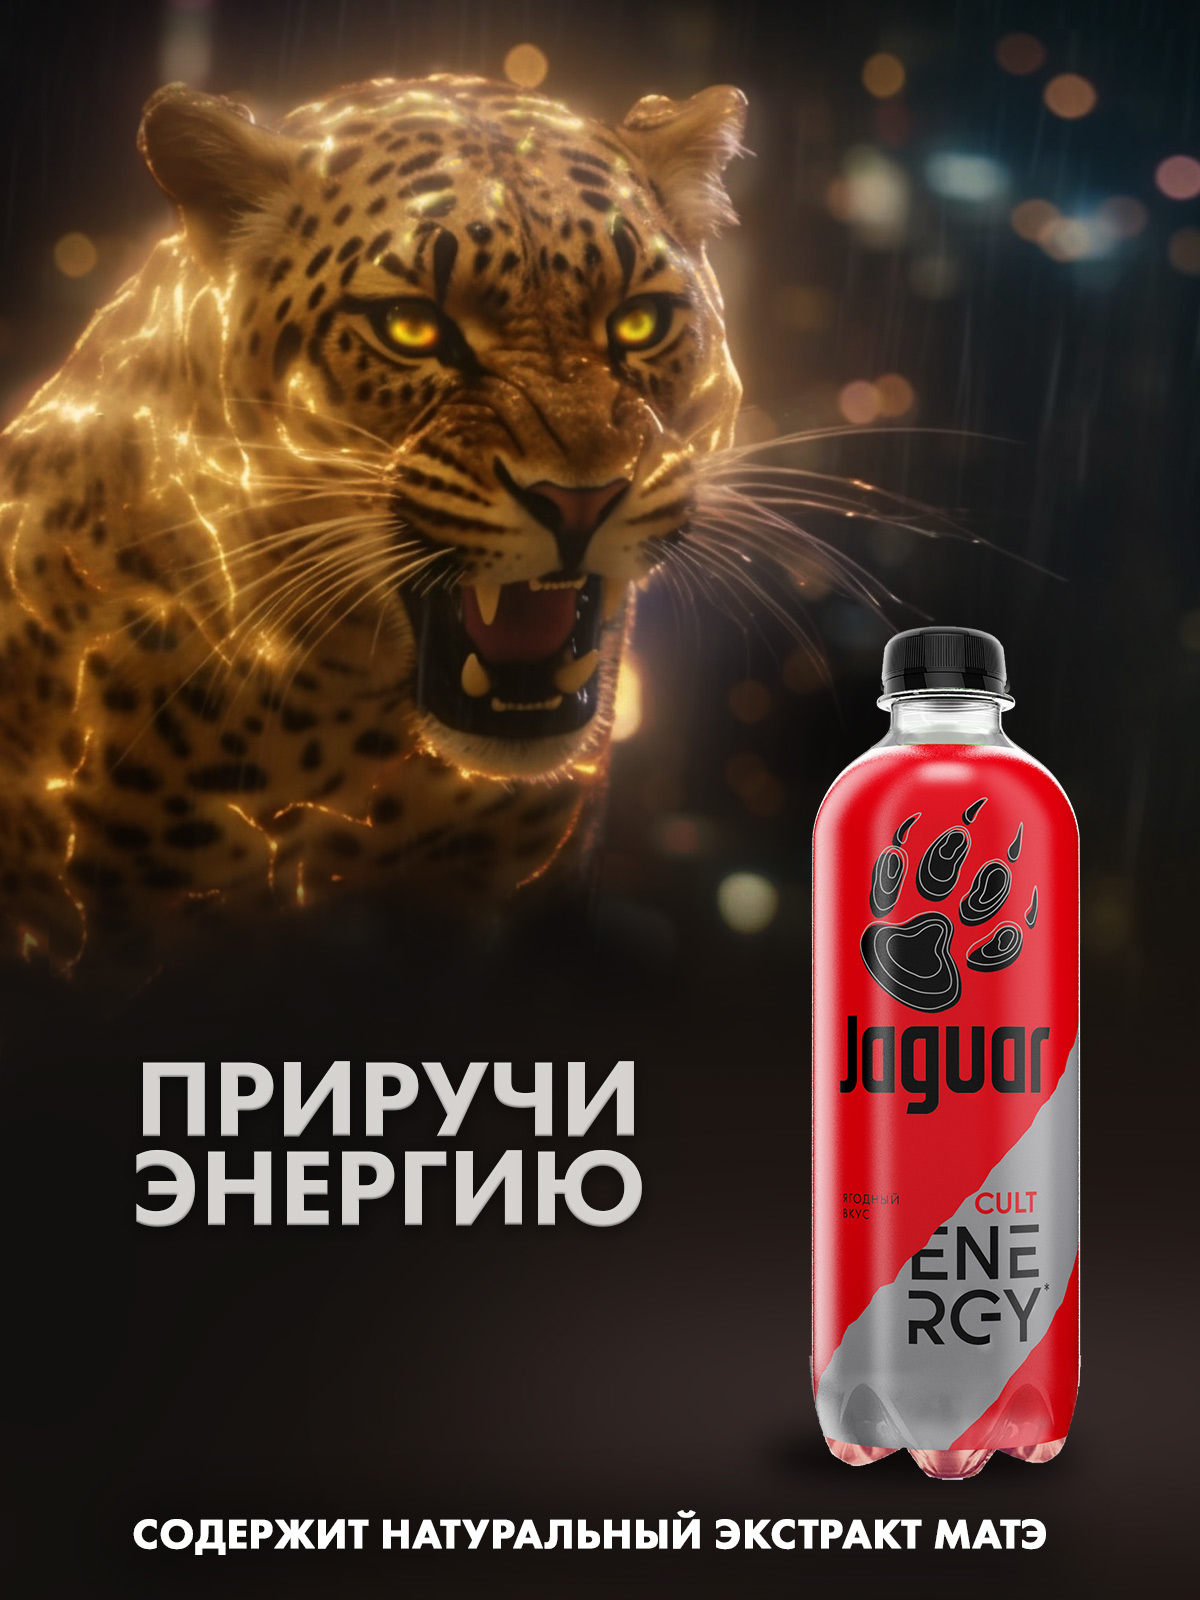 Энергетический напиток Jaguar Cult energy, 0,47 л х 12 шт